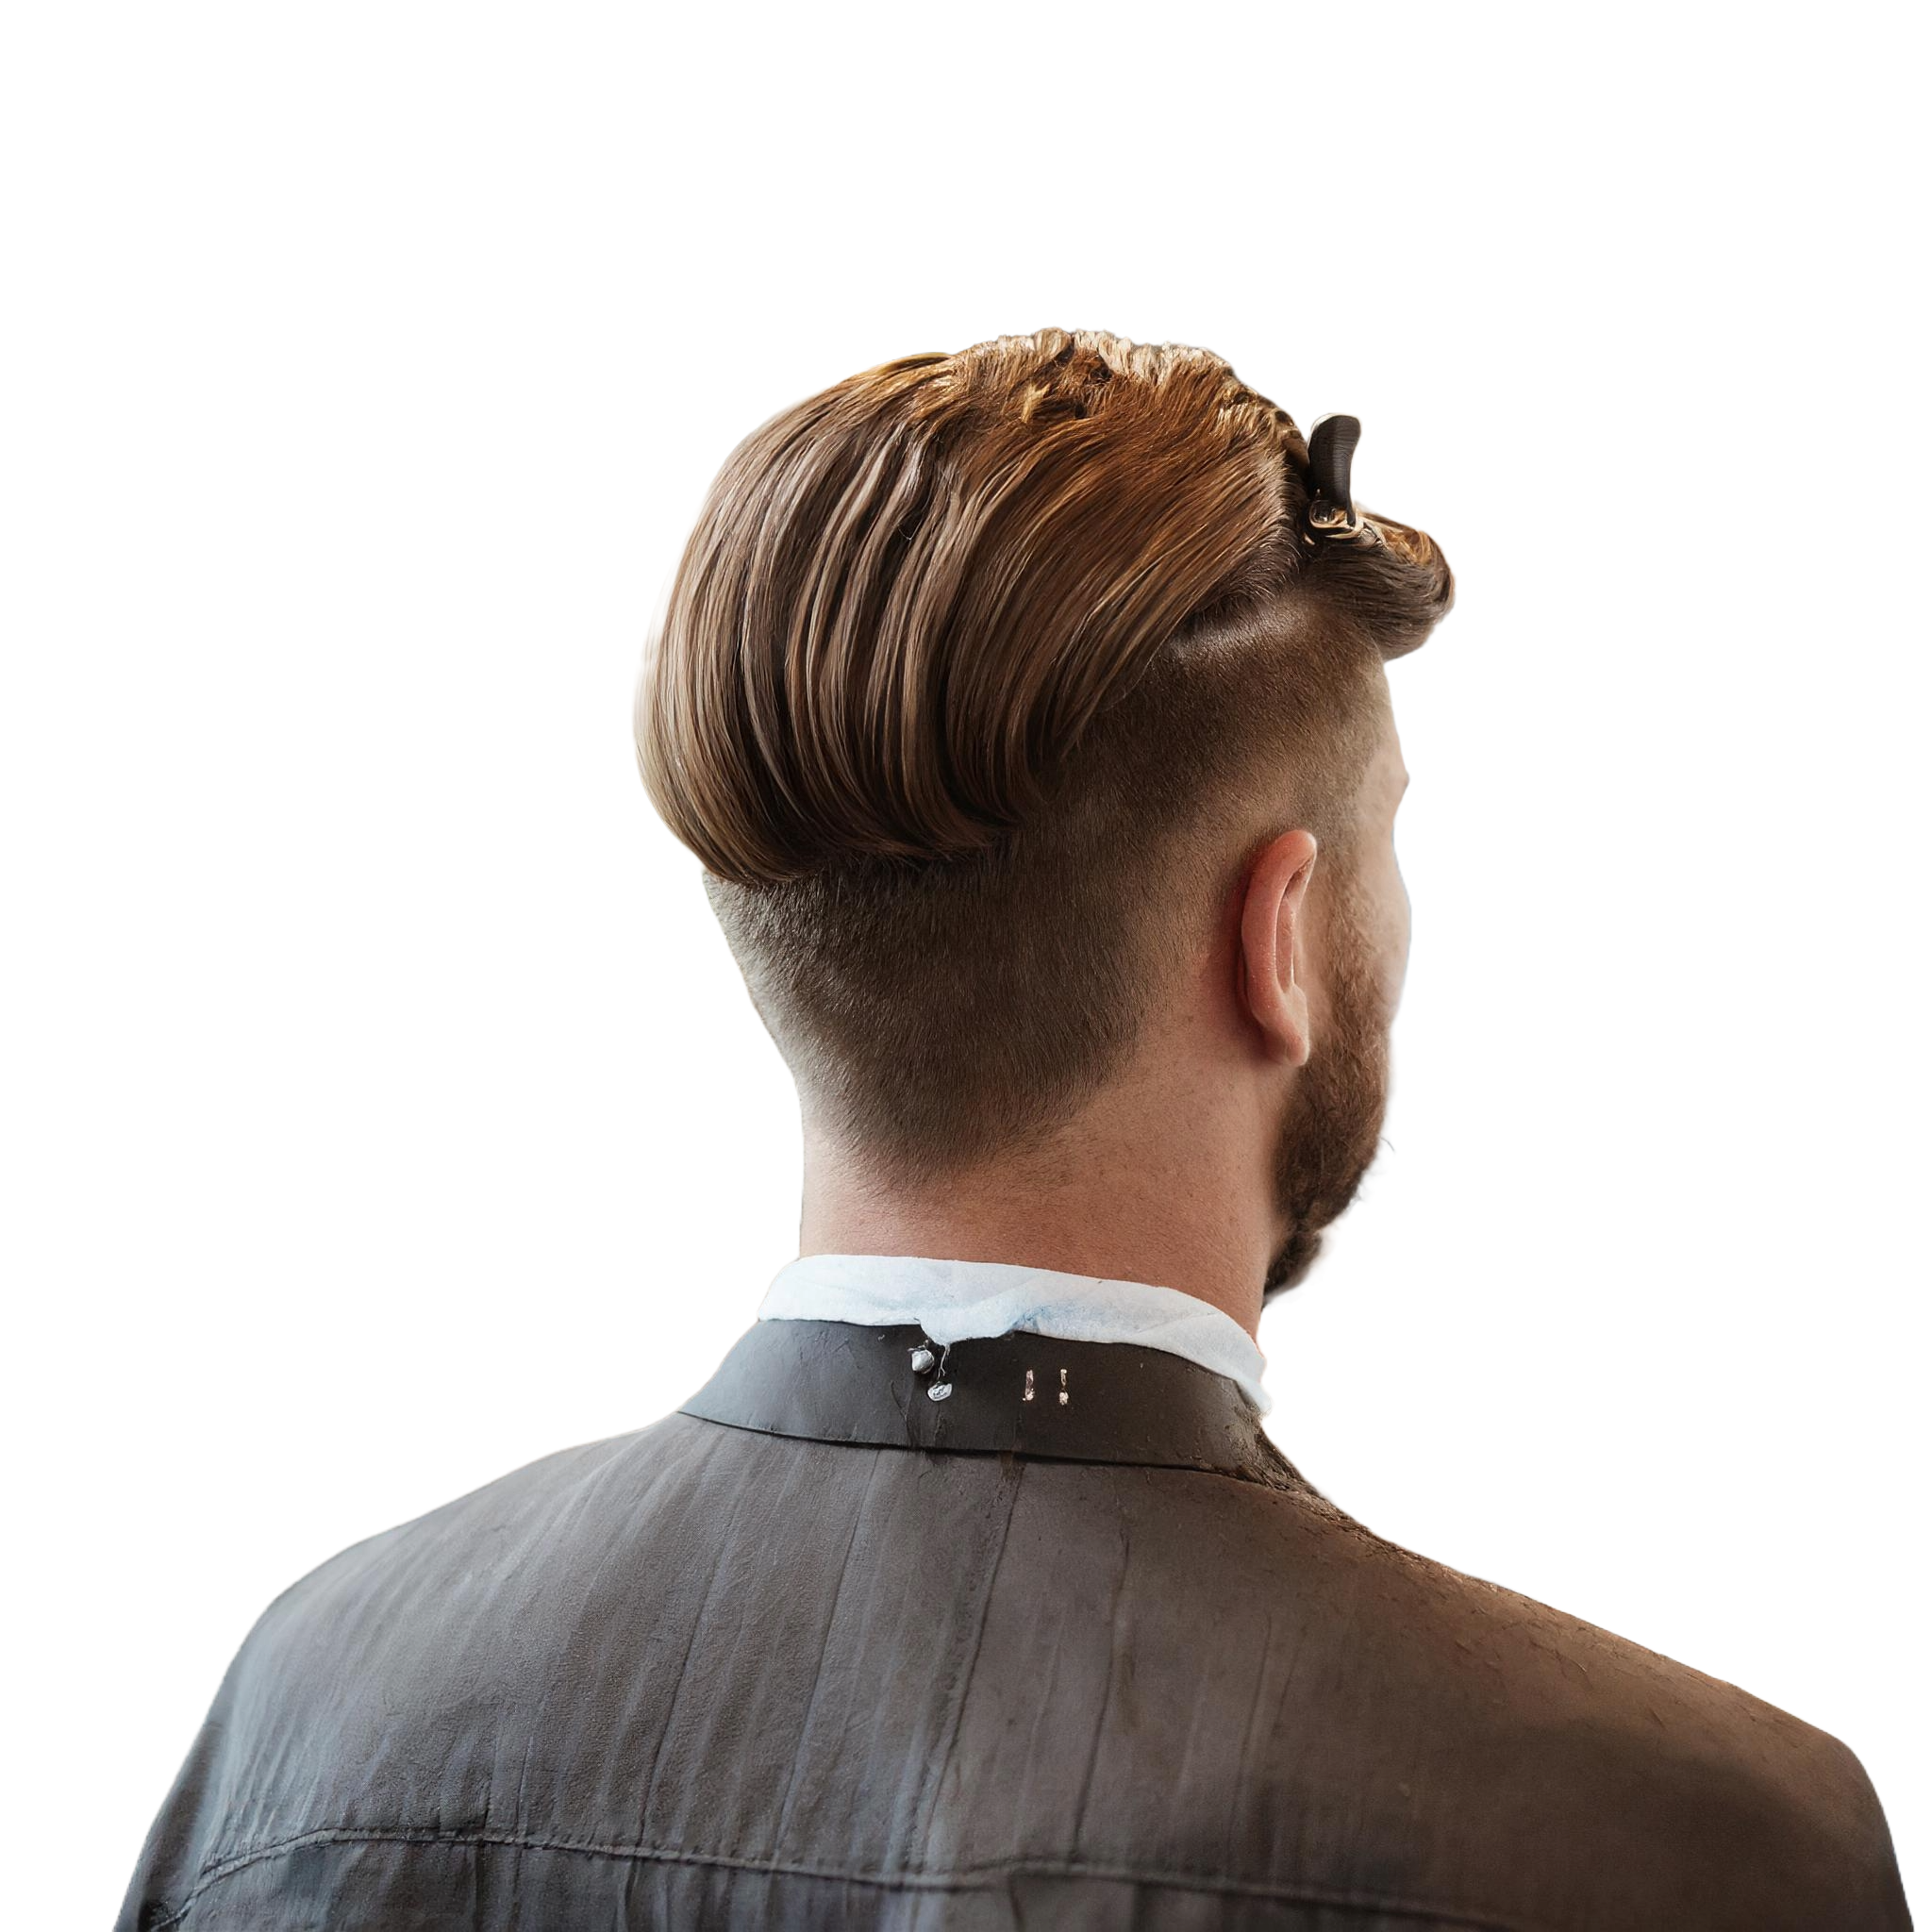 Rückansicht eines Mannes mit einem gepflegten, zurückgekämmten Frisur, die Seiten kurz rasiert und das obere Haar in einer glänzenden, braunen Pomade gestylt. Der Mann trägt einen Friseurumhang und ein weißes Hemd, das mit einer Klemme am Nacken zusammengehalten wird, vor einem weißen Hintergrund.